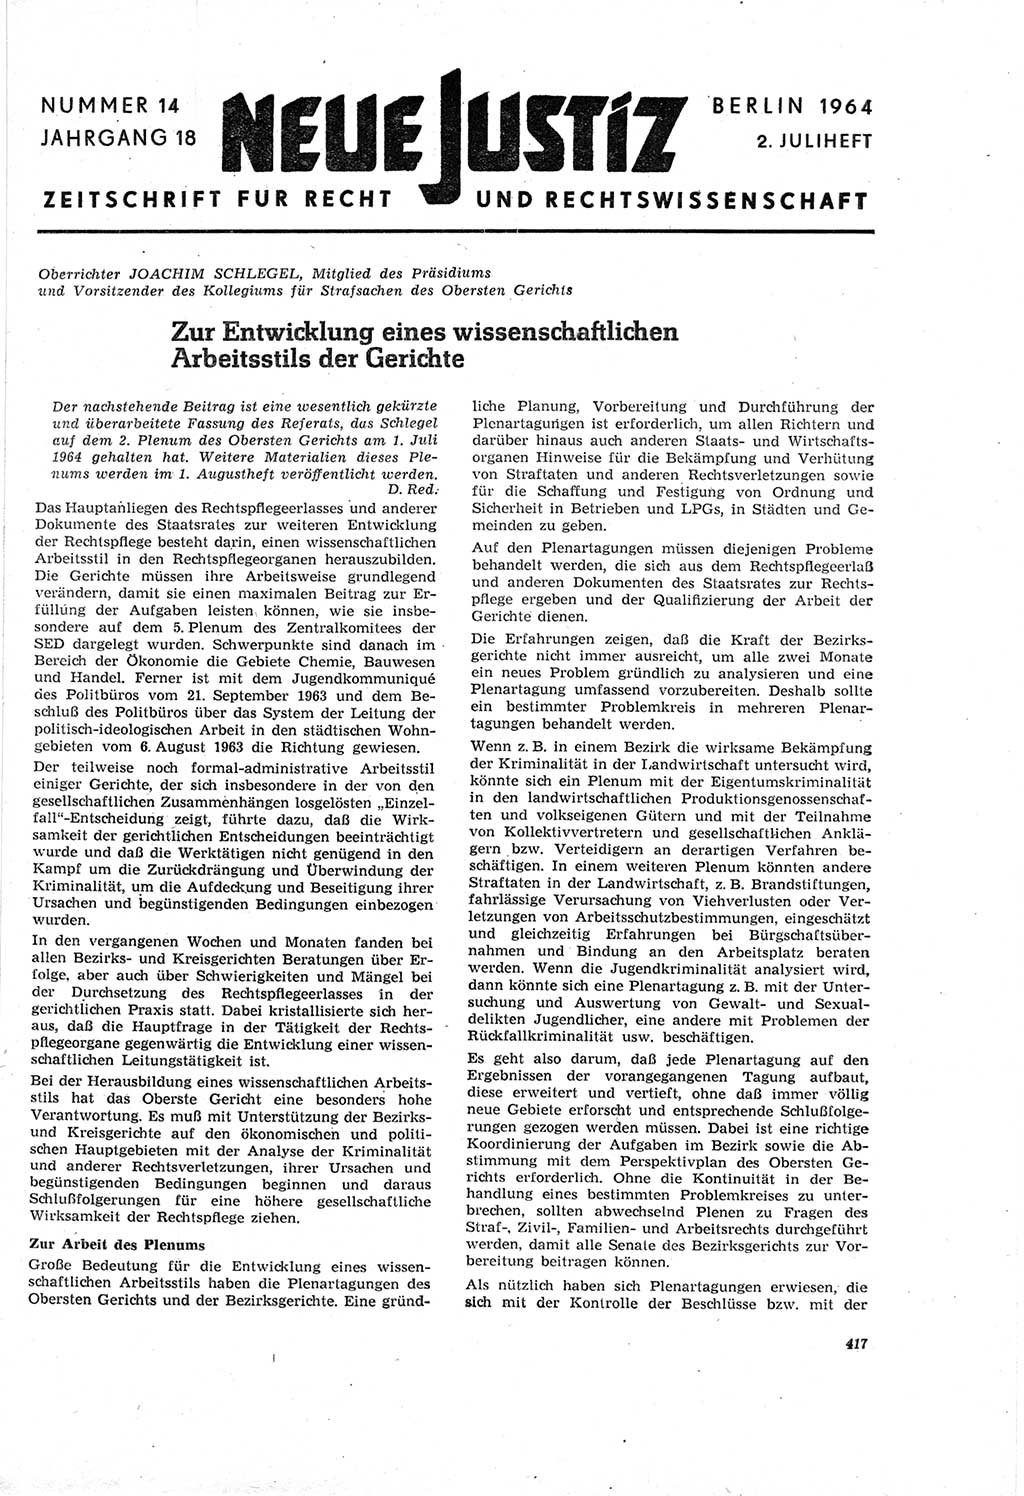 Neue Justiz (NJ), Zeitschrift für Recht und Rechtswissenschaft [Deutsche Demokratische Republik (DDR)], 18. Jahrgang 1964, Seite 417 (NJ DDR 1964, S. 417)